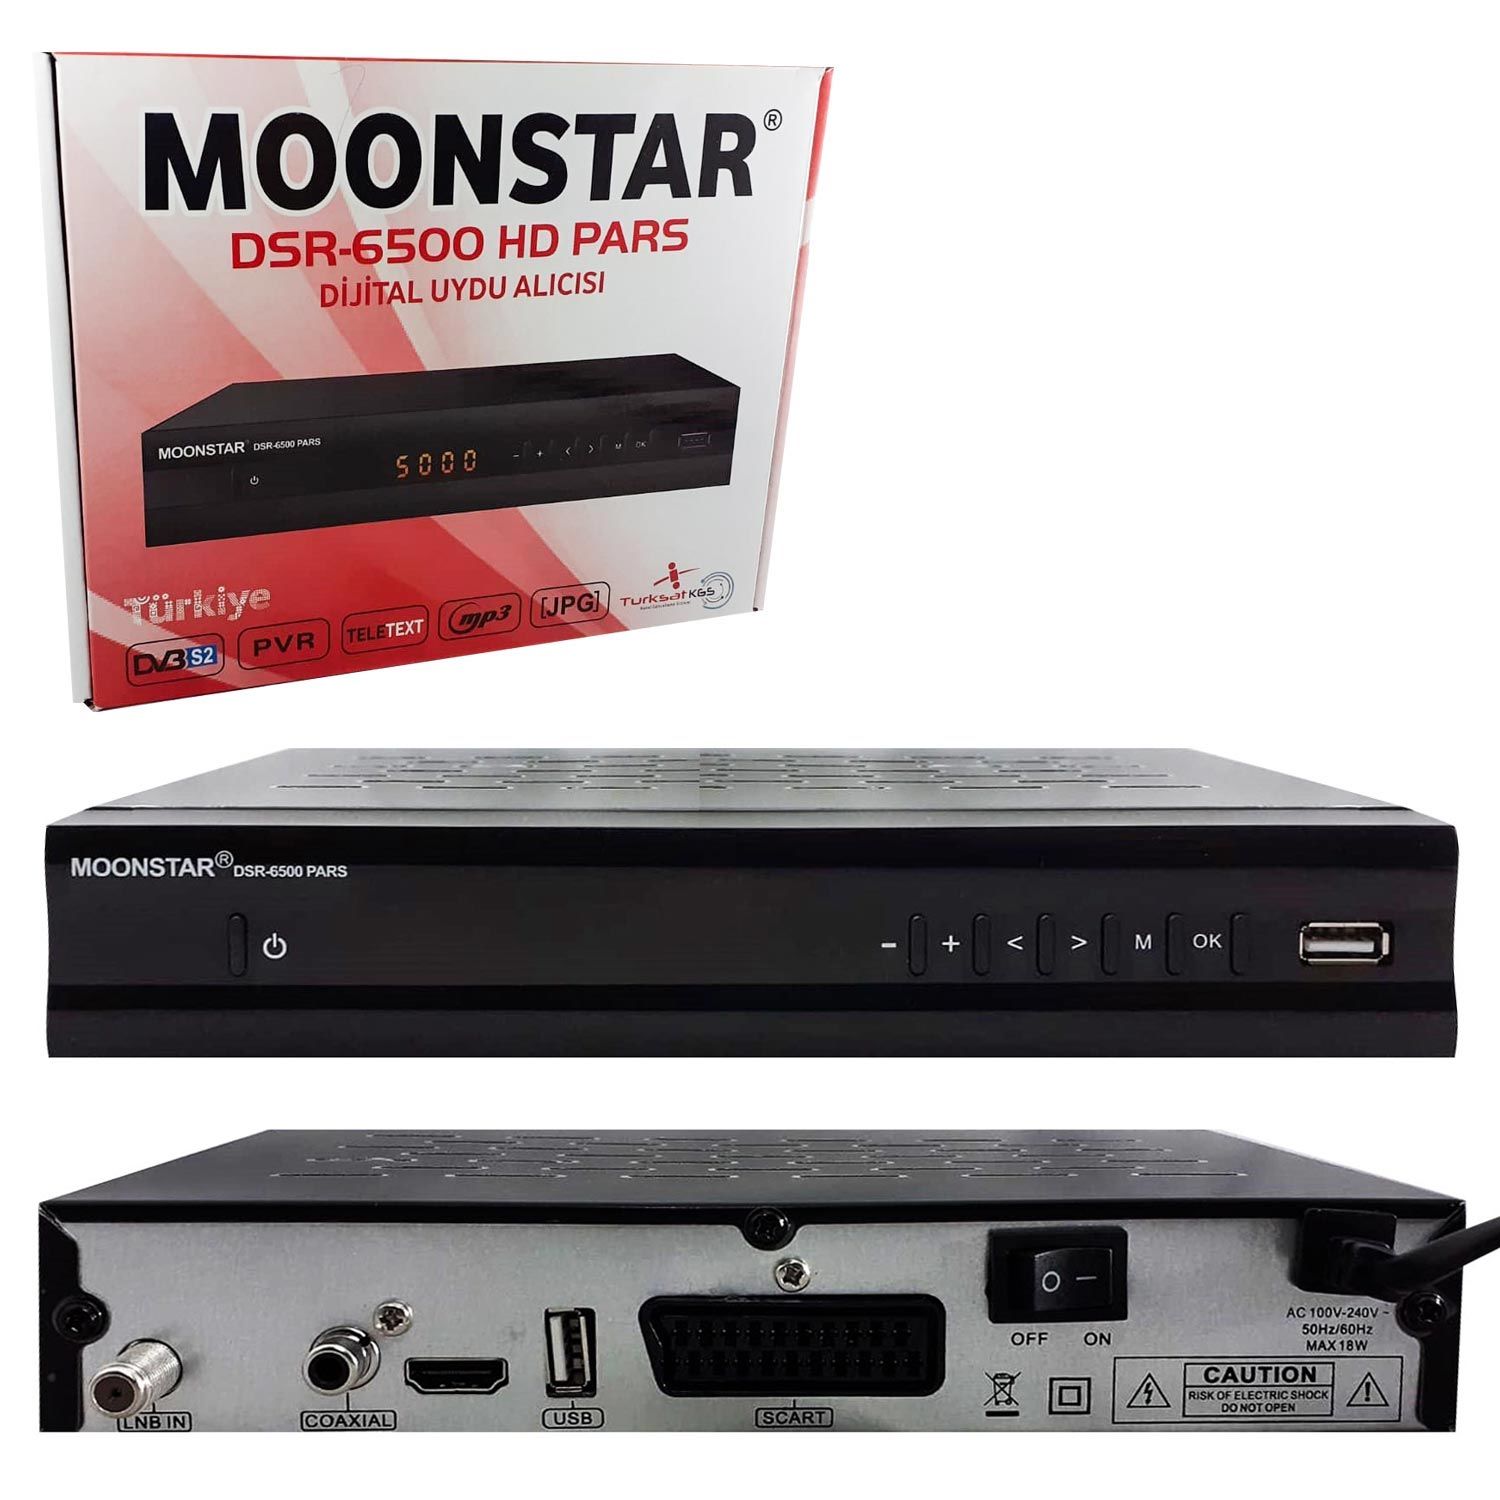 UYDU ALICI KASALI FULL HD SCART+HDMI MOONSTAR DSR-6500 HD PARS